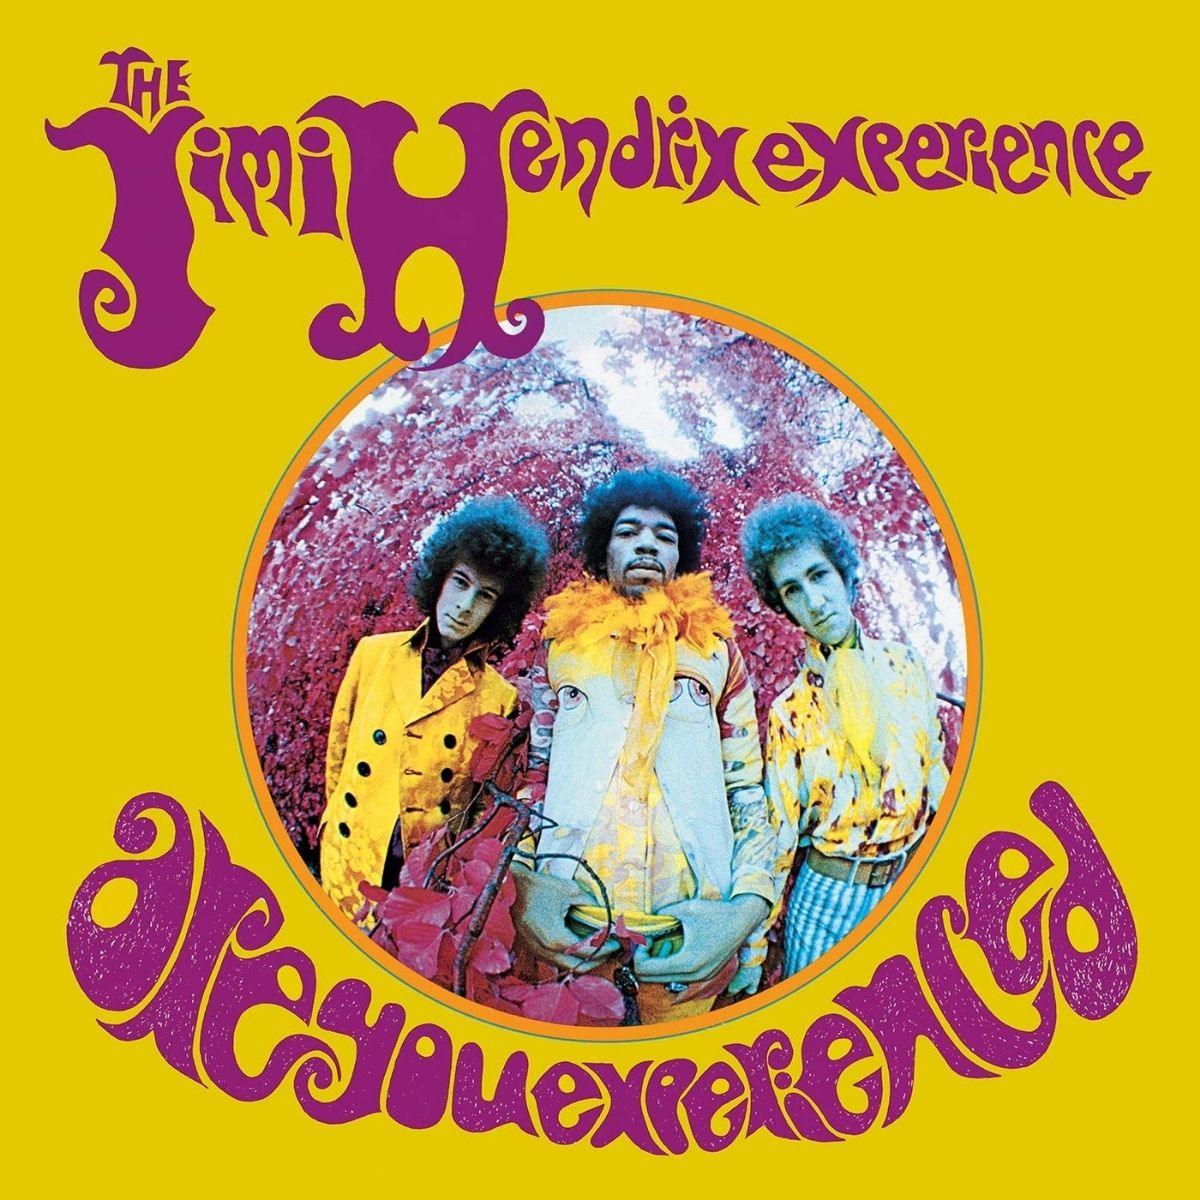 Couverture de l'album Are You Experience de Jimi Hendrix (1967)